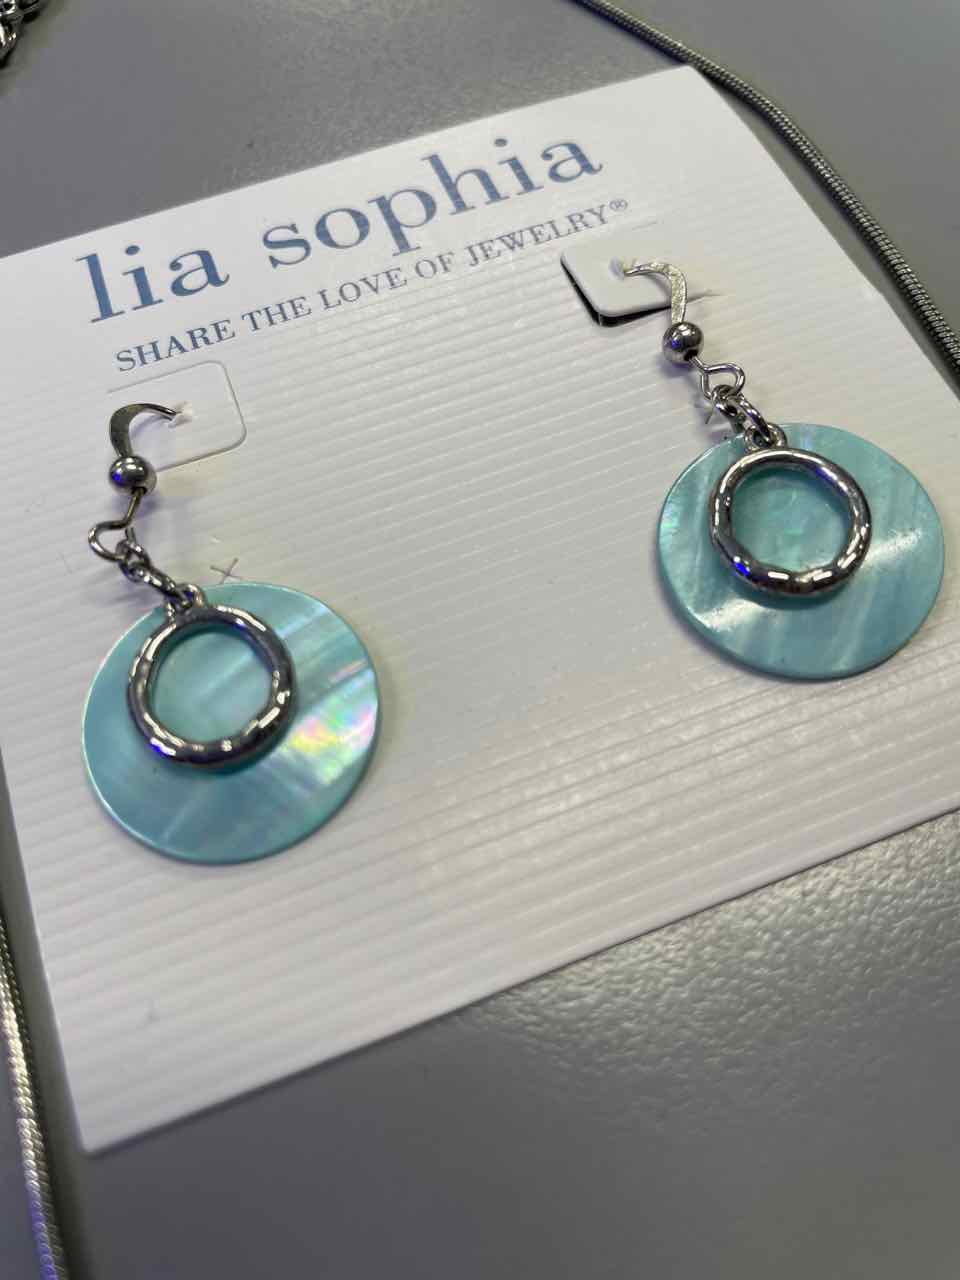 Jewelry - Lia Sophia Necklace & Earrings